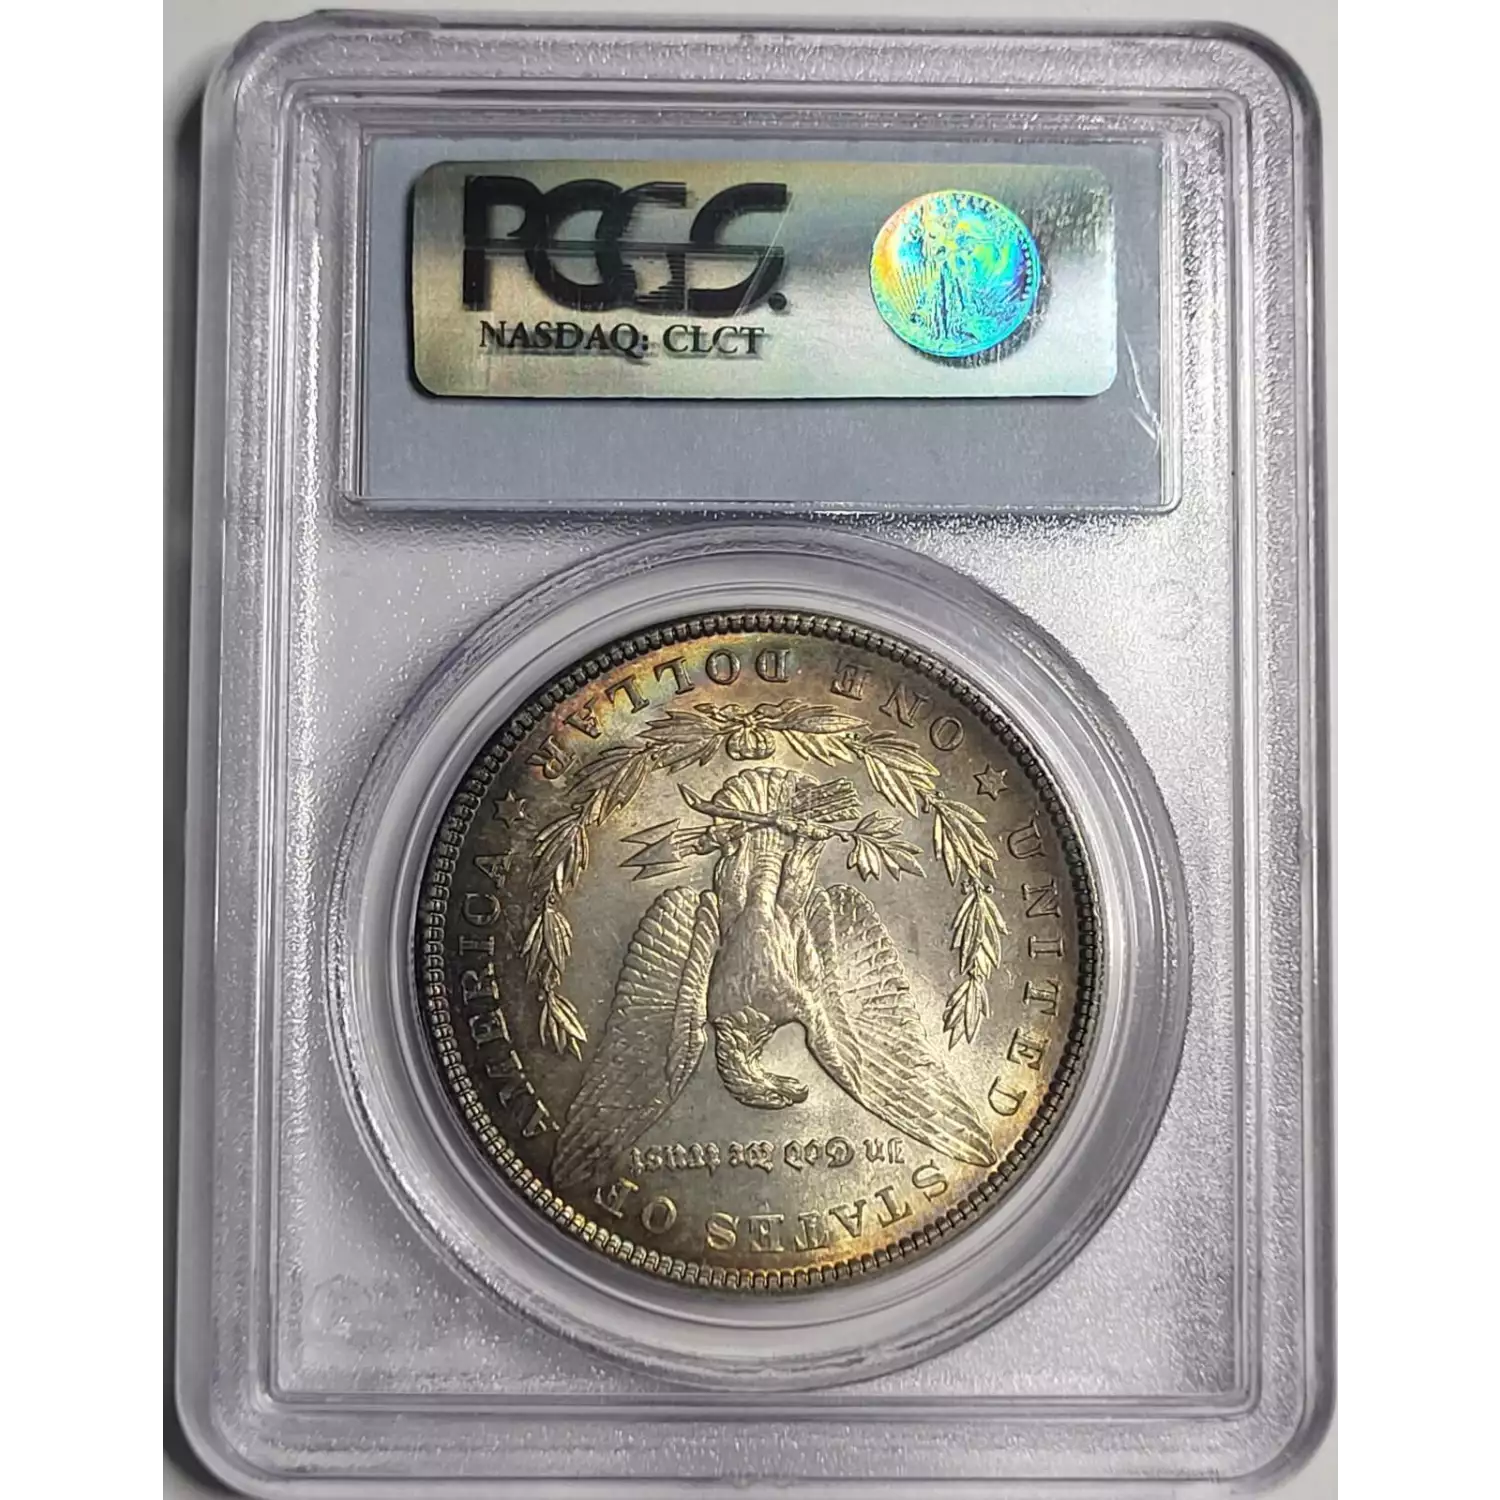 1904 $1 (5)